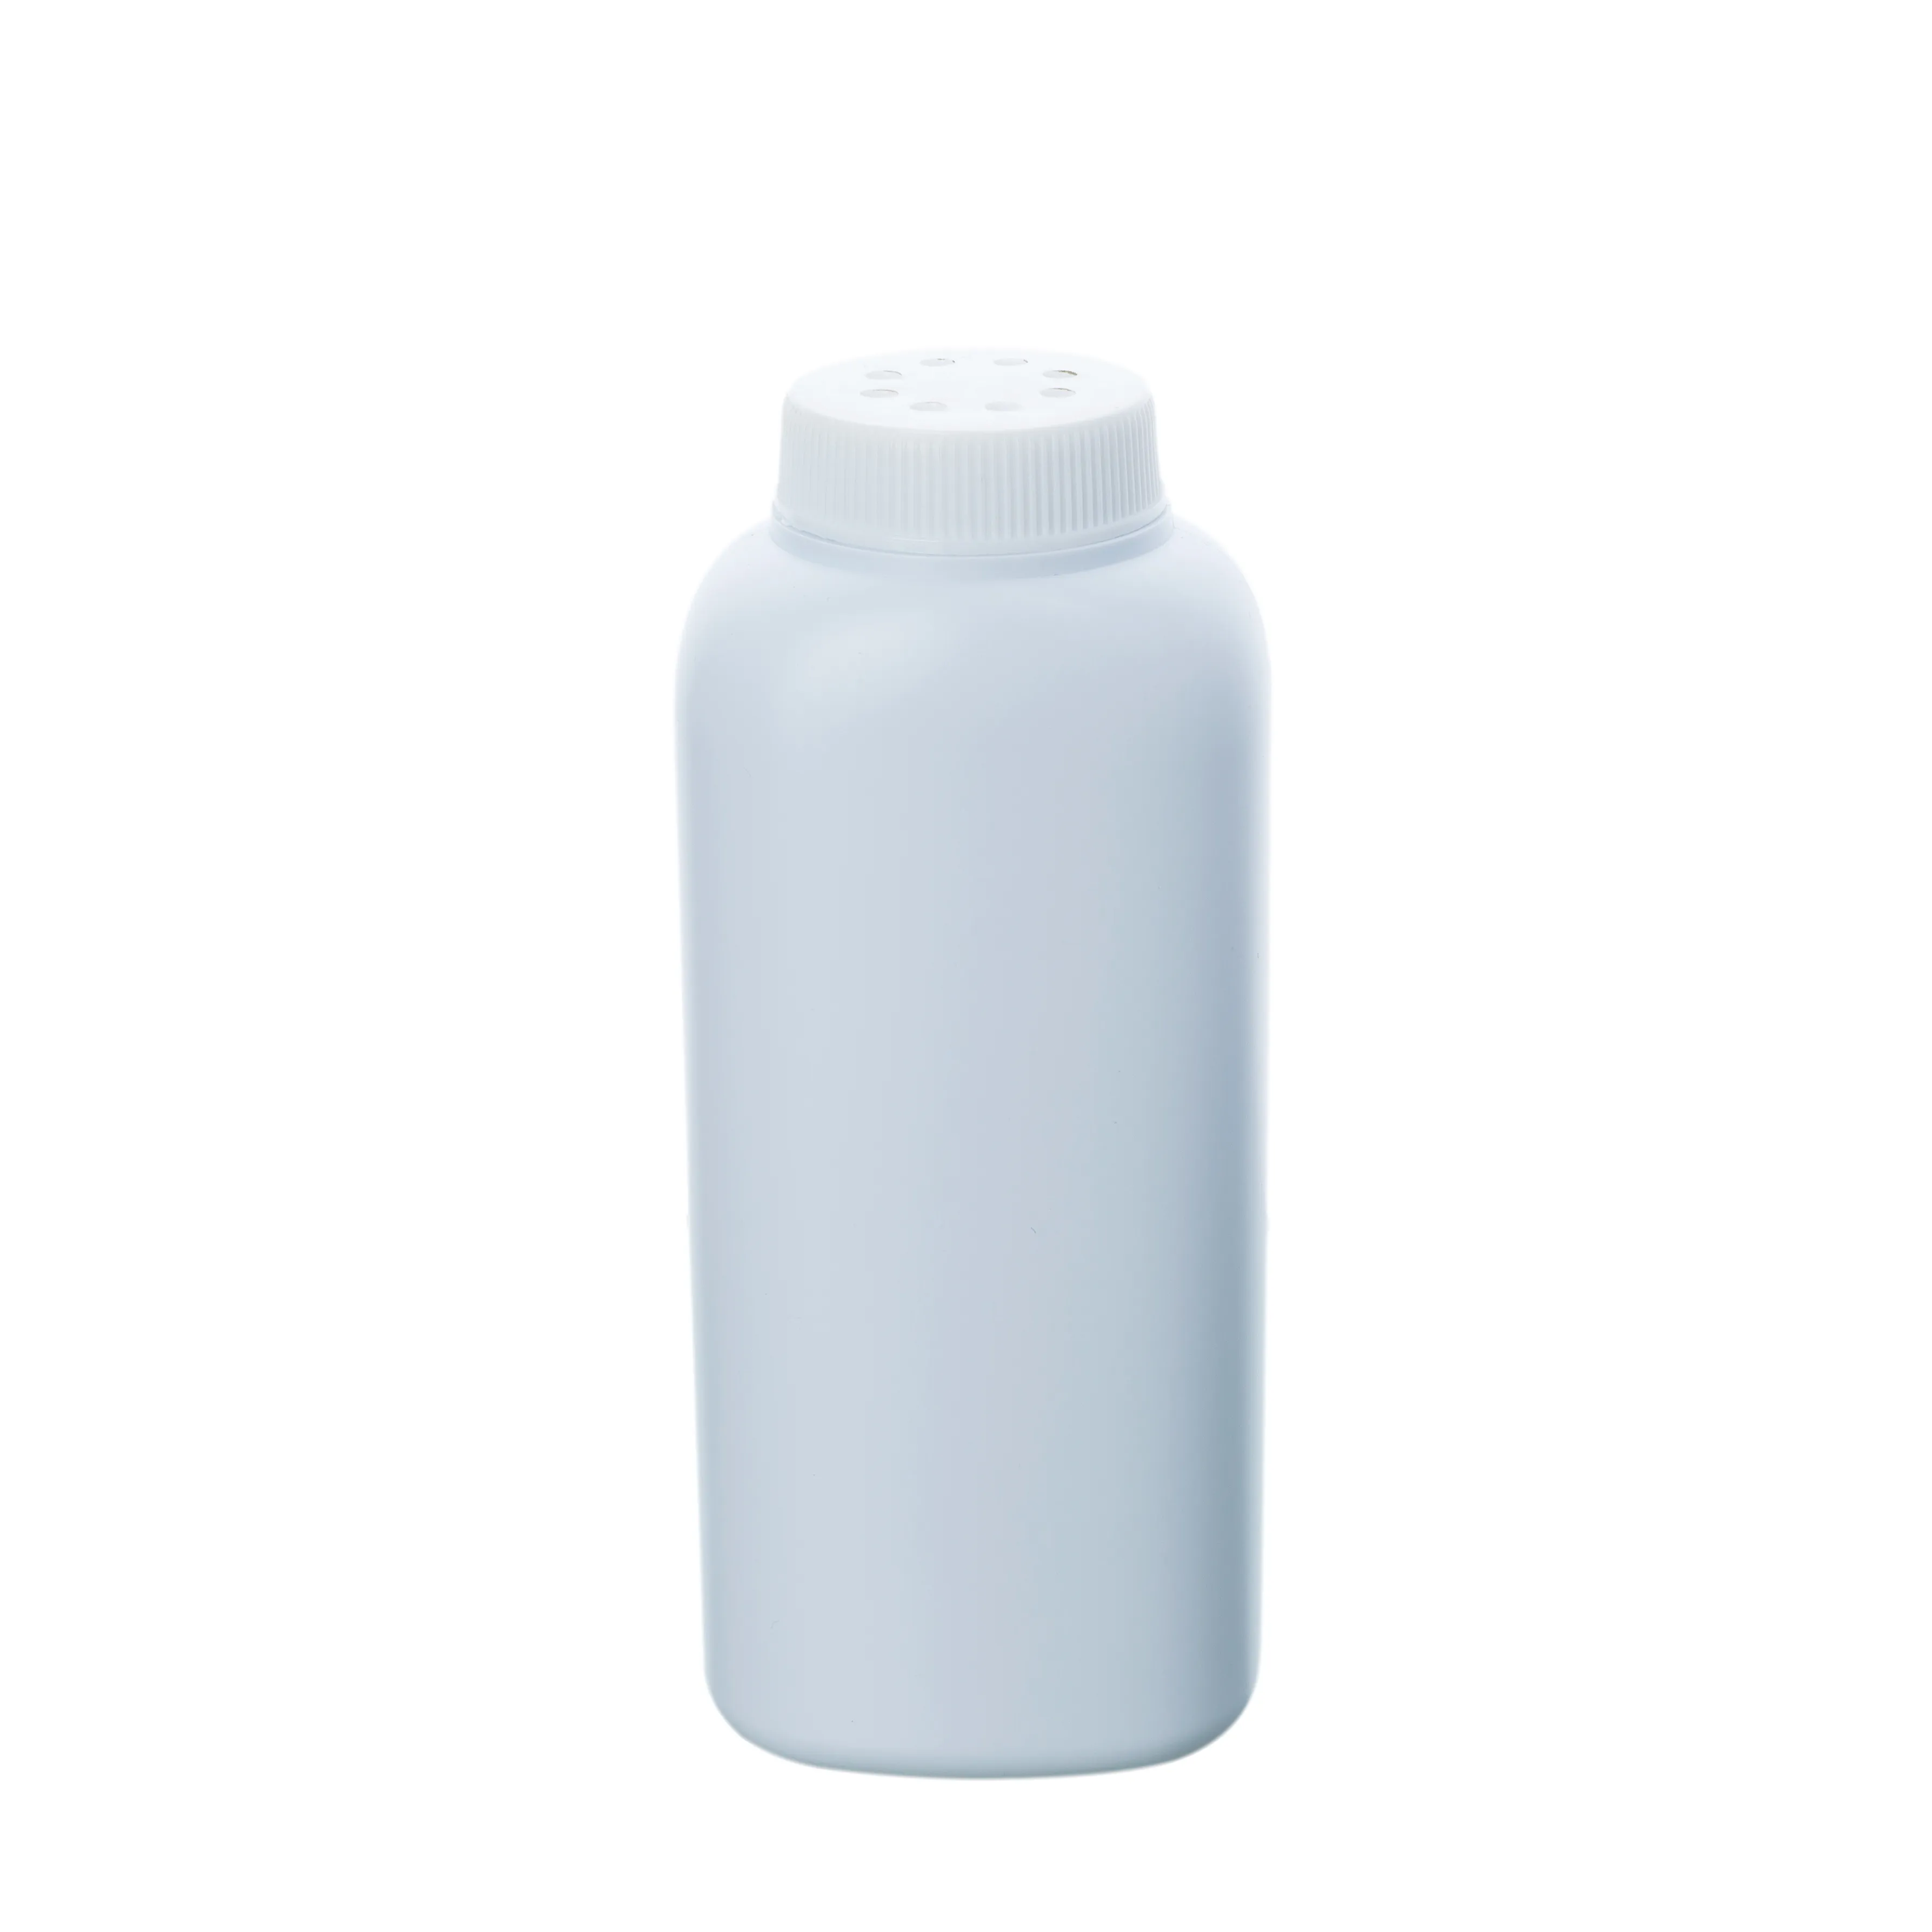 Capuchon à vis carrée en plastique HDPE, 100g, avec trous, poudre de titanate pour bébé, bouteille blanche vide